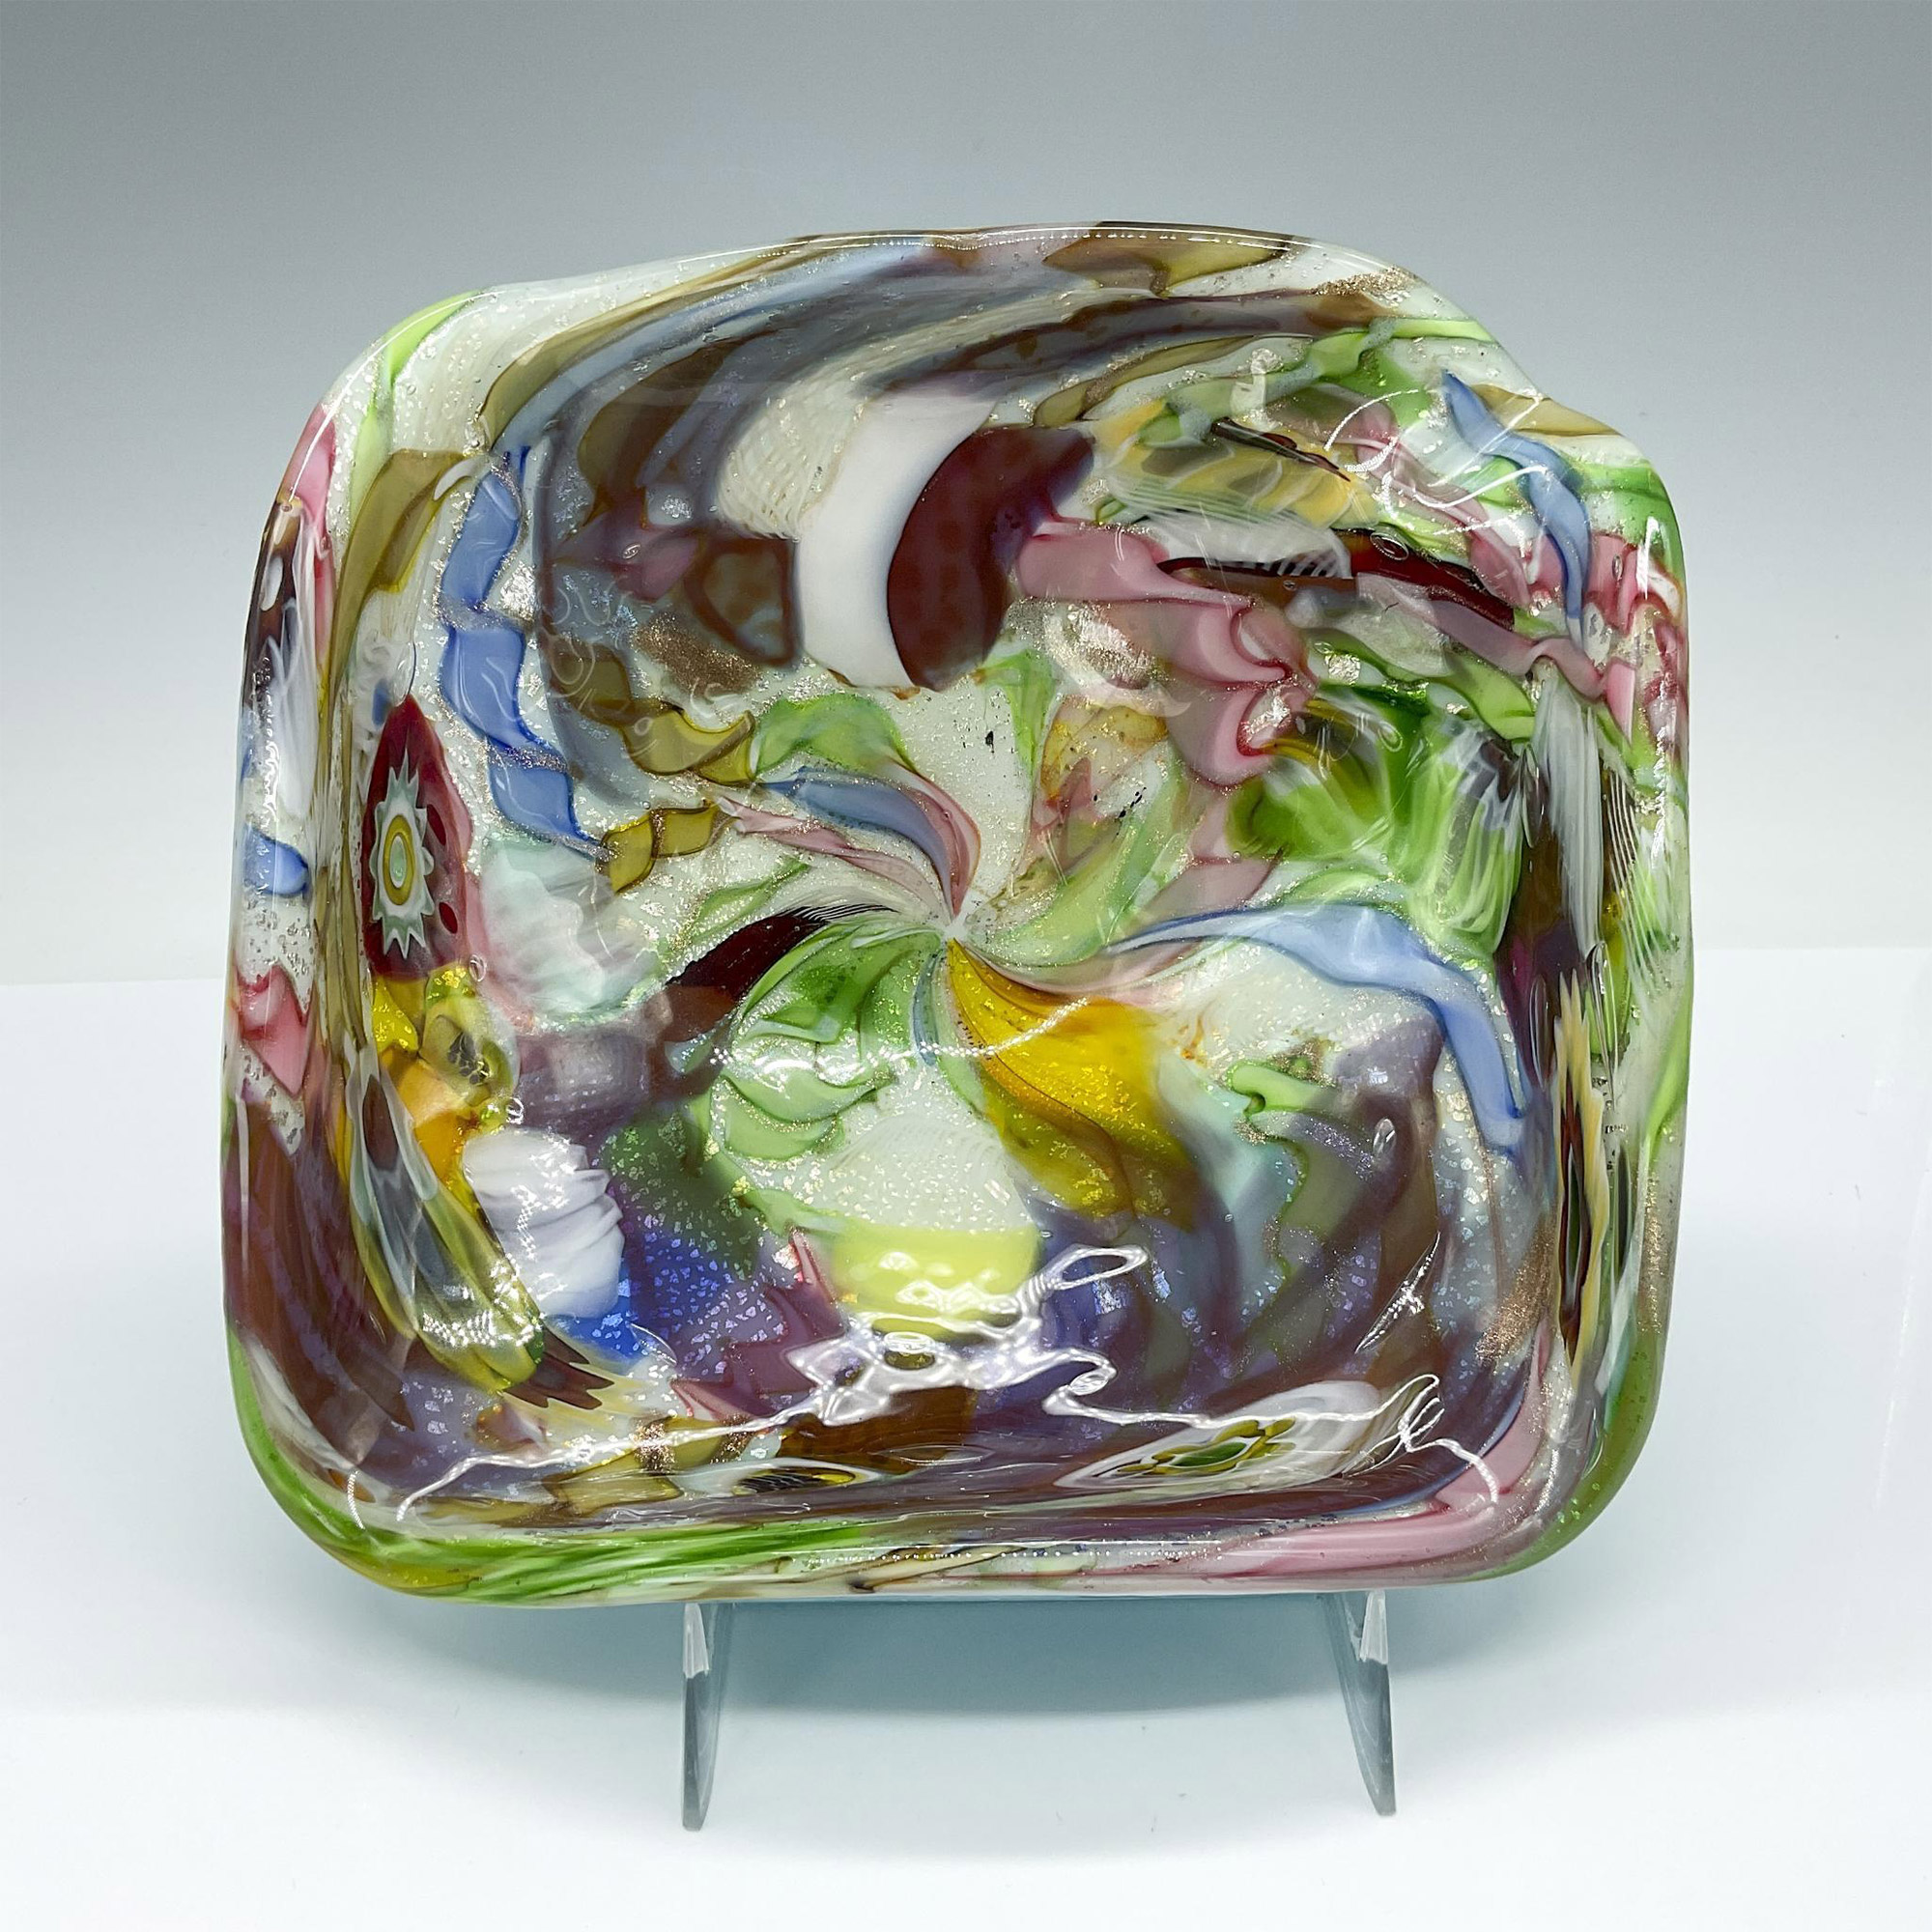 Avem Bizantino Art Glass Bowl - Image 3 of 4